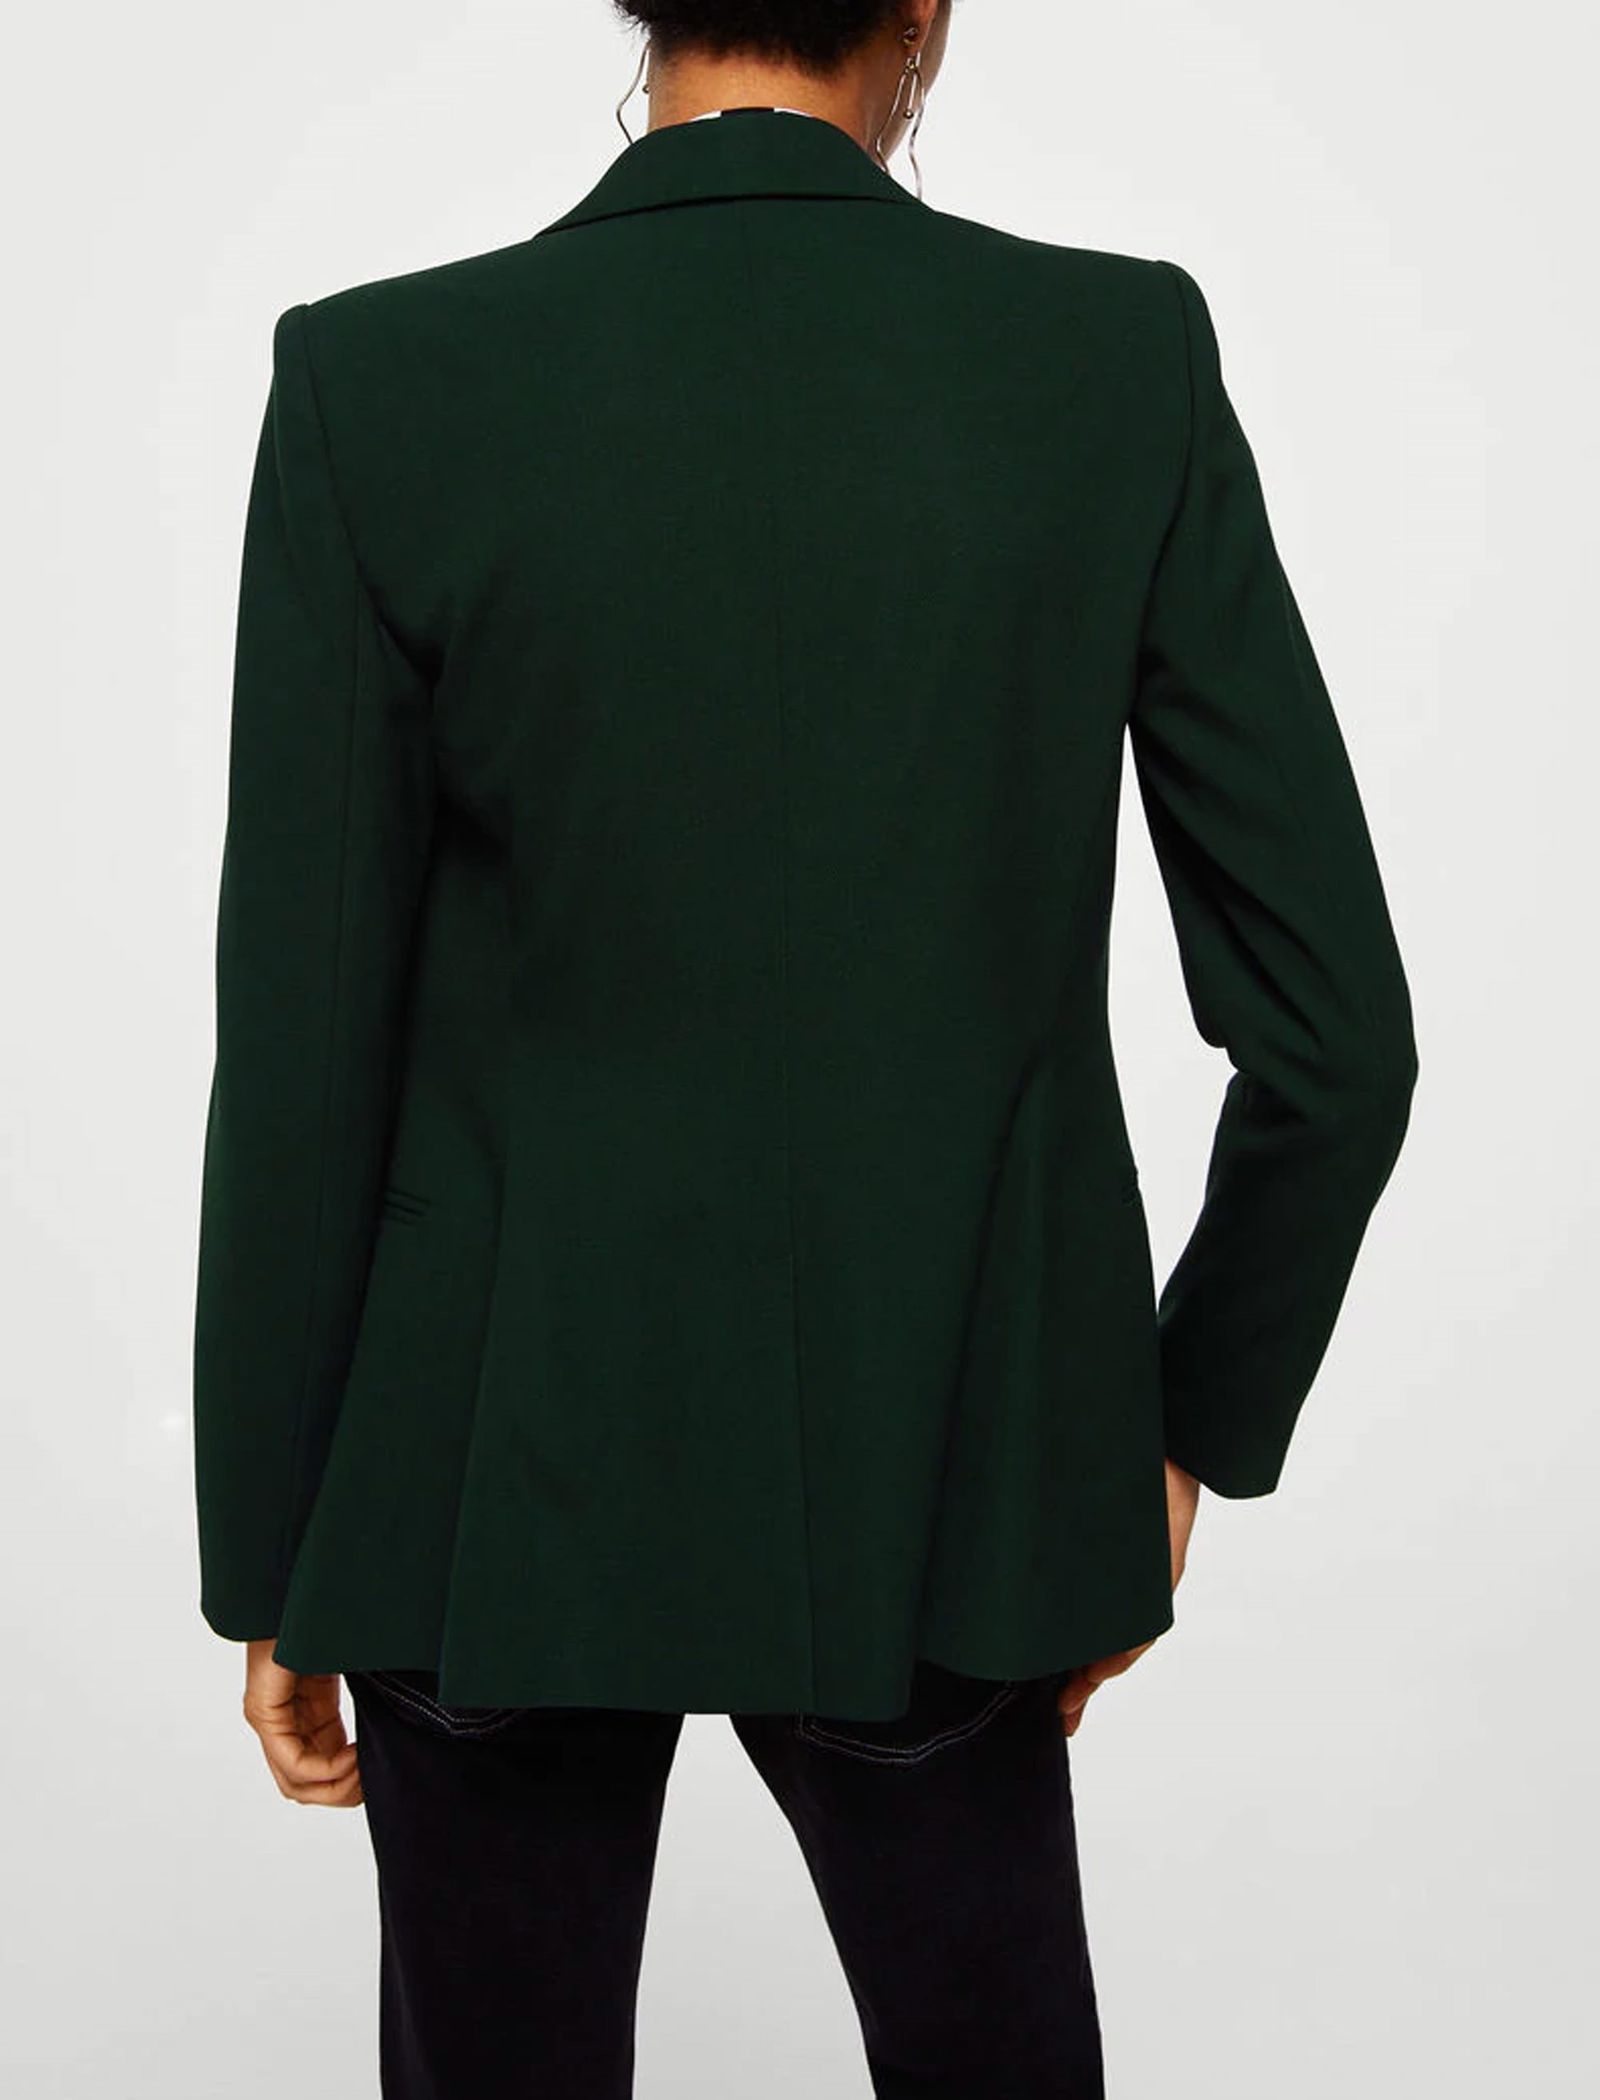 کت کوتاه زنانه - مانگو - سبز - 3